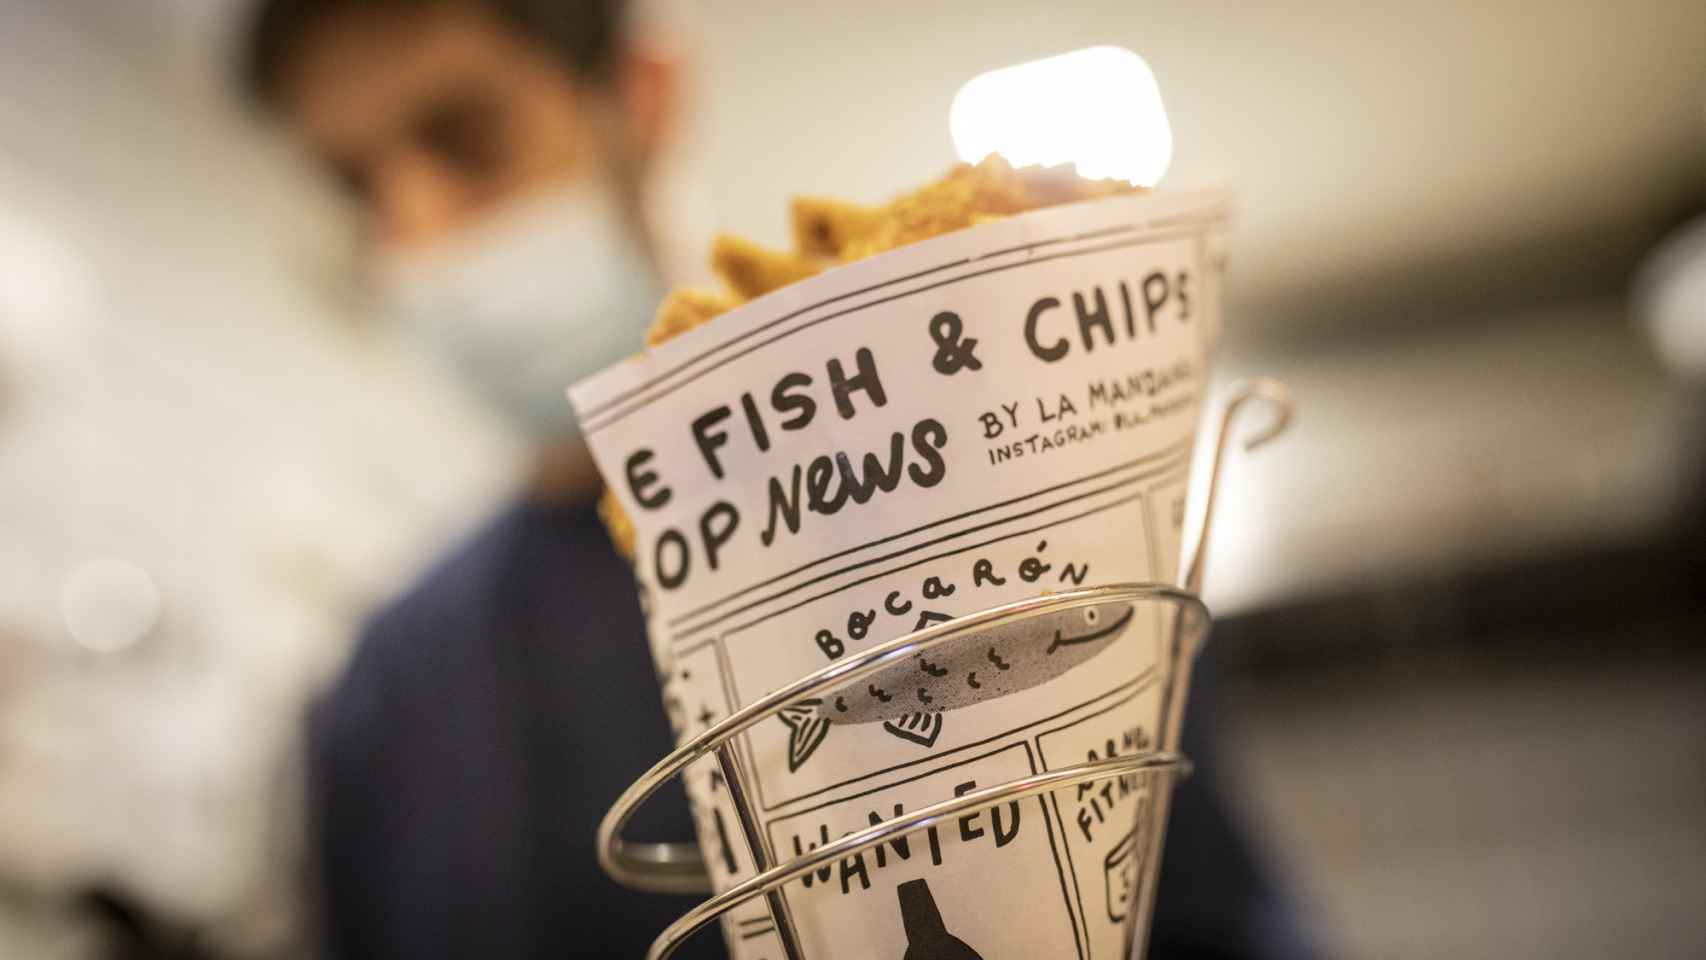 El clásico Fish and Chips, el más vendido de la carta.